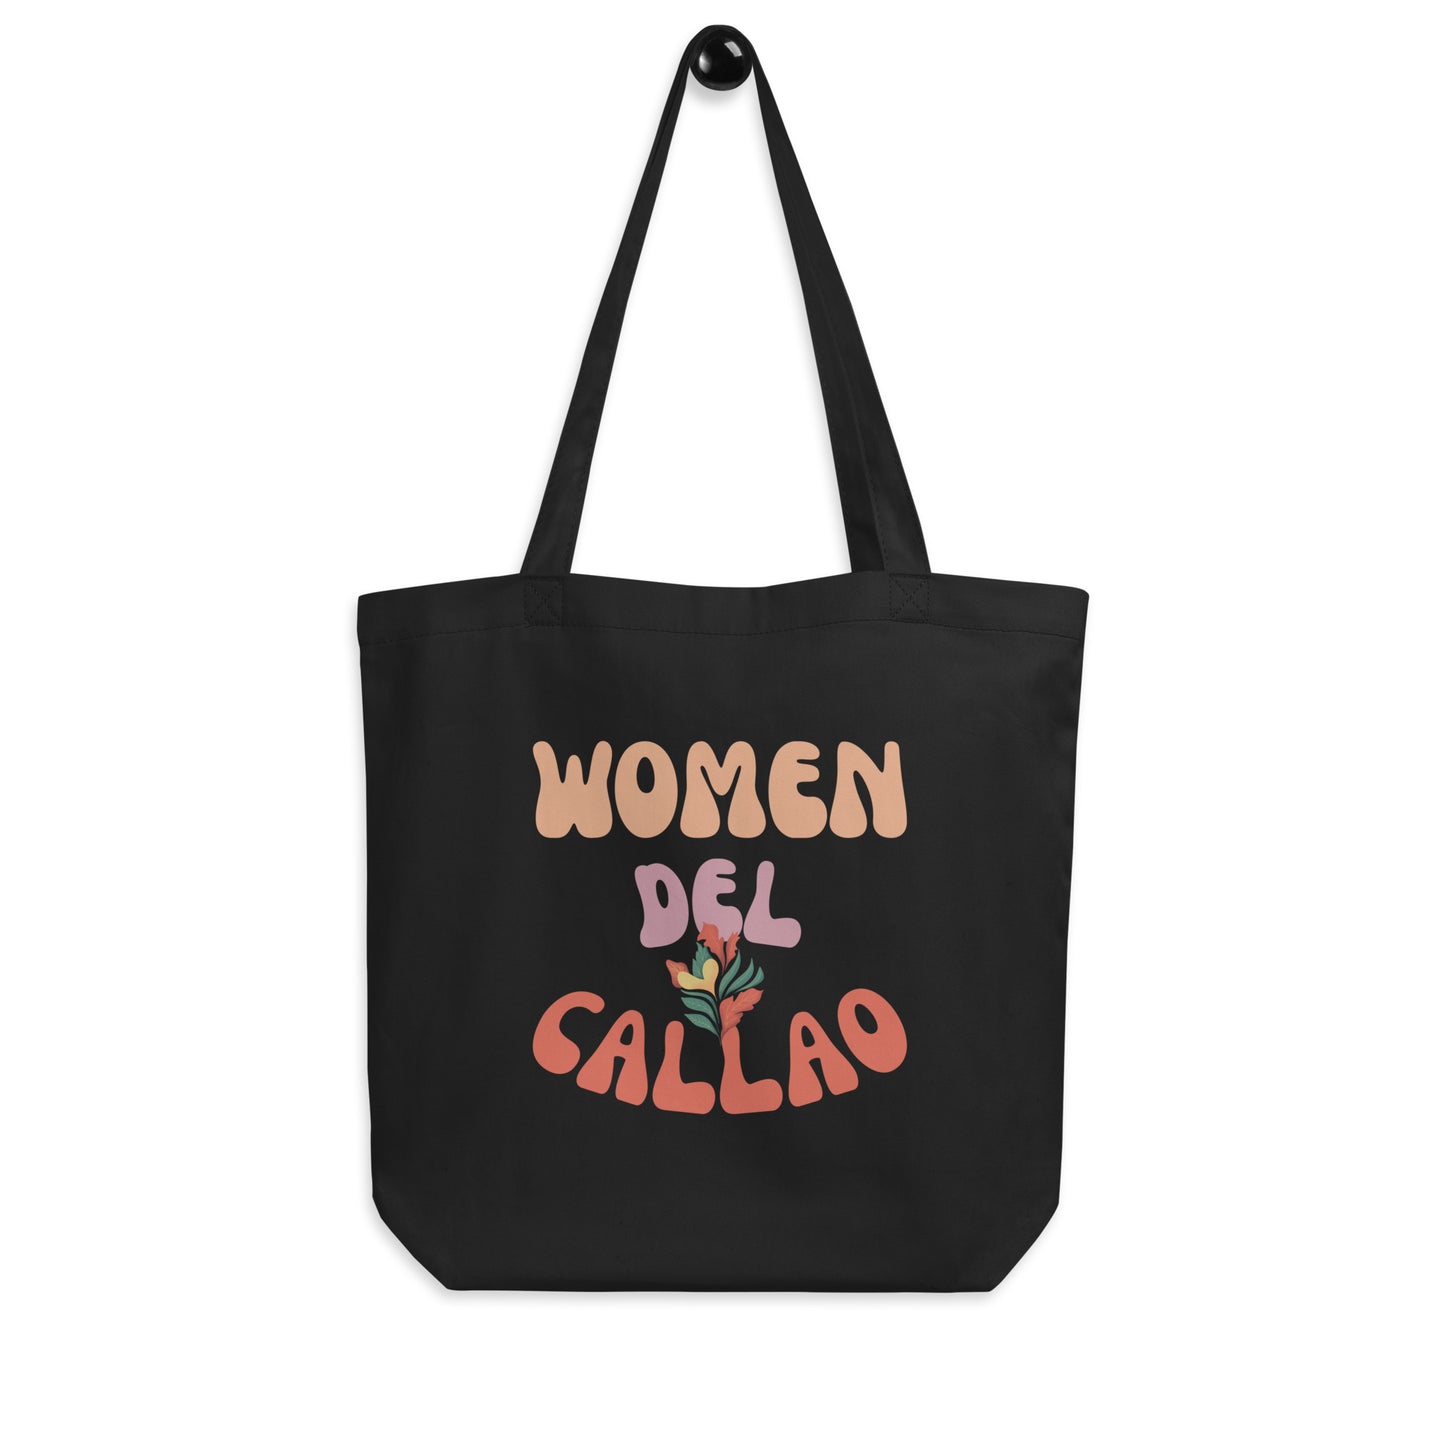 Woman Del Callao Tote Bag